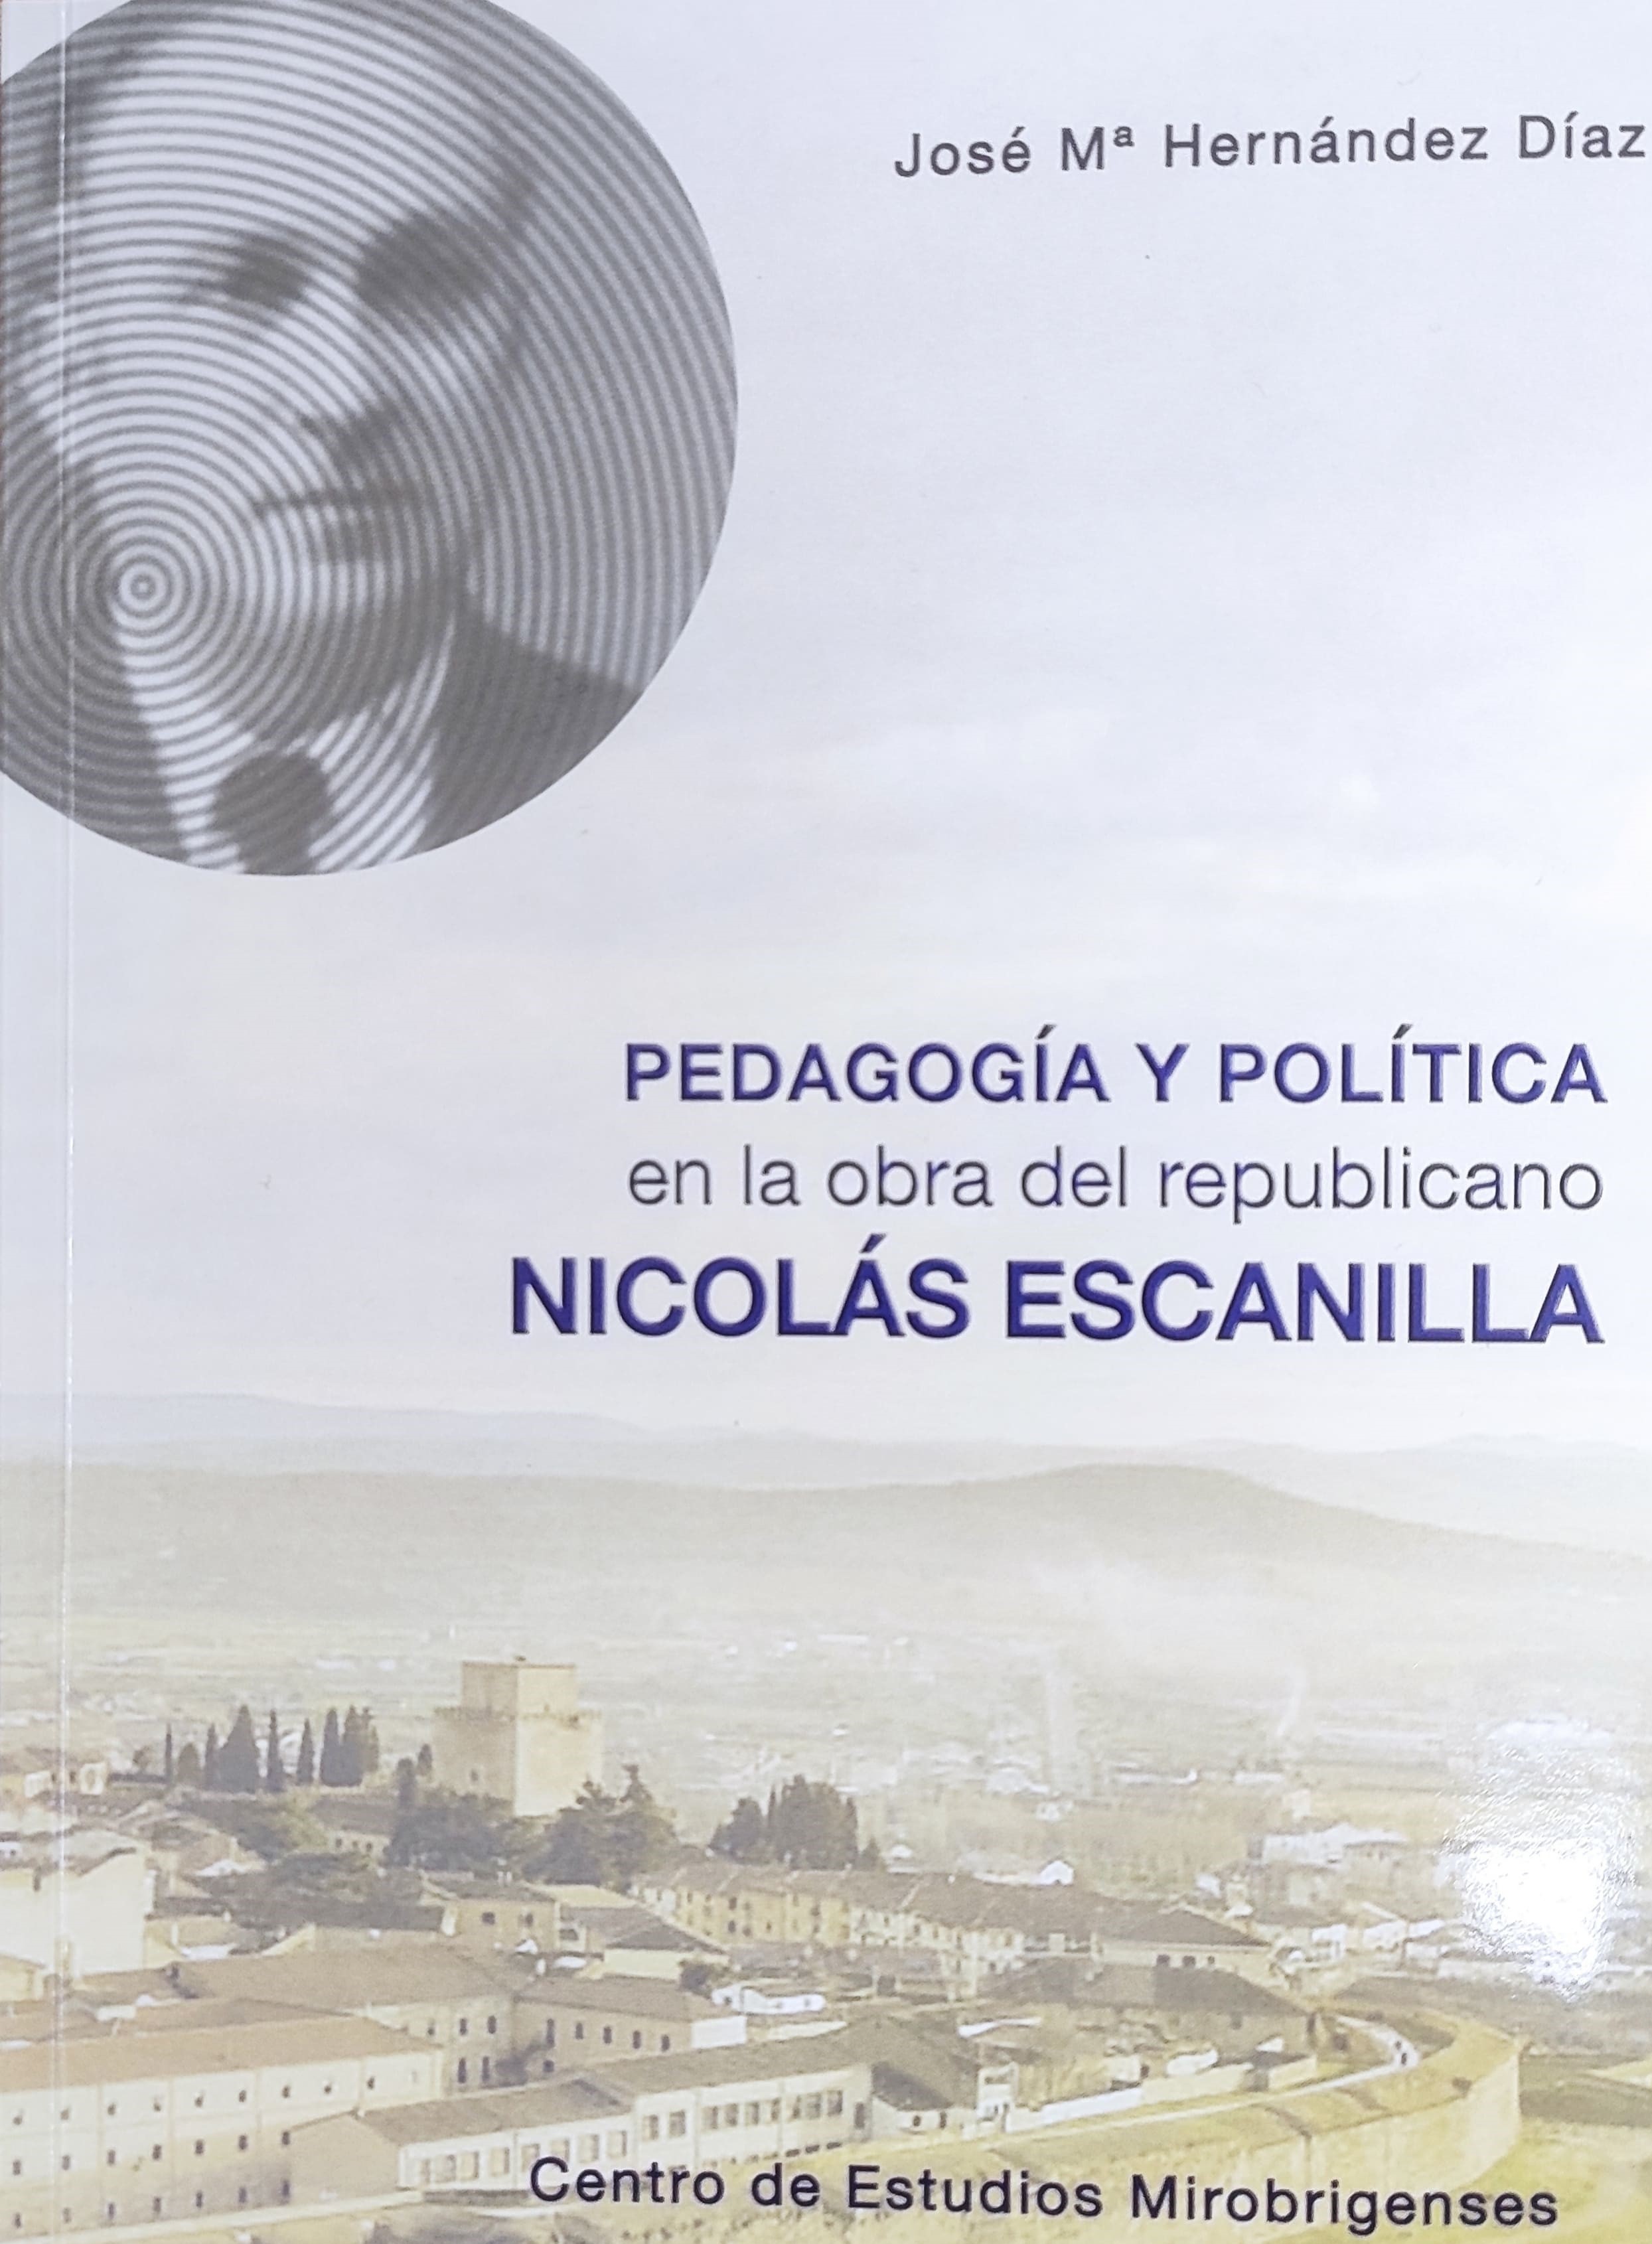 Imagen de portada del libro Pedagogía y política en la obra del republicano Nicolás Escanilla